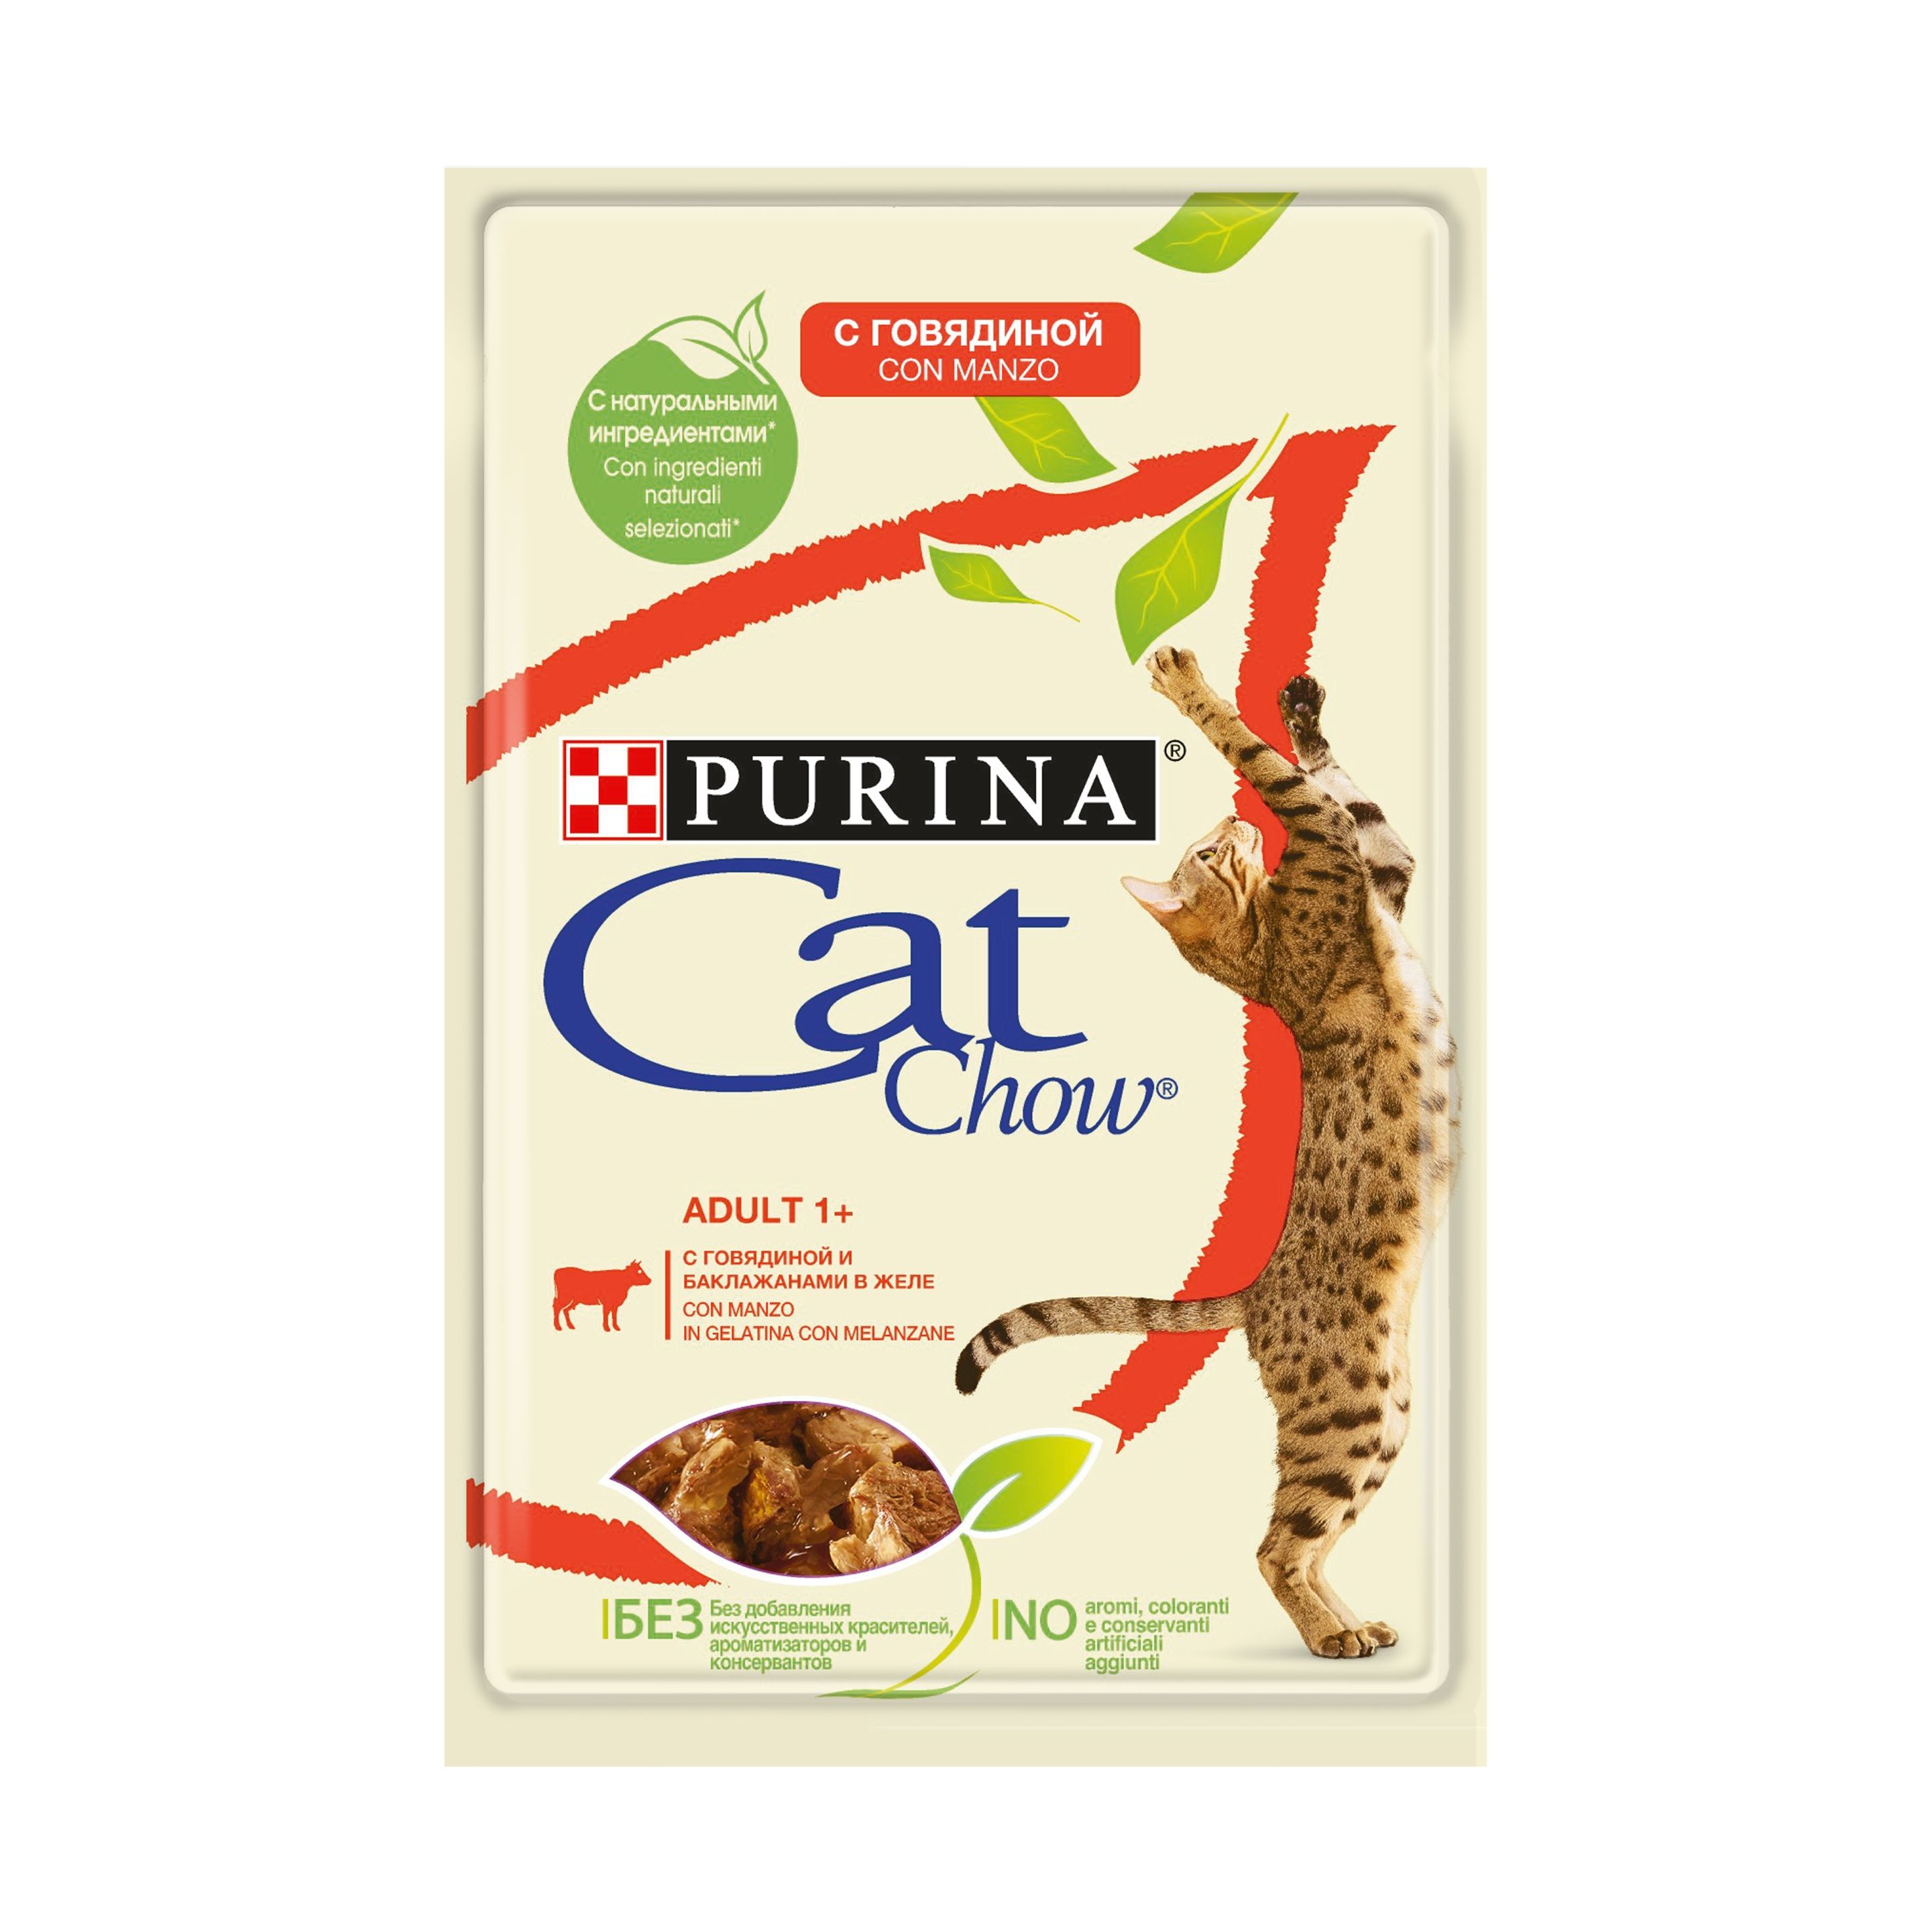 Purina Cat Chow Adult Паучи для кошек с говядиной и баклажанами 5*0,085 кг АКЦИЯ